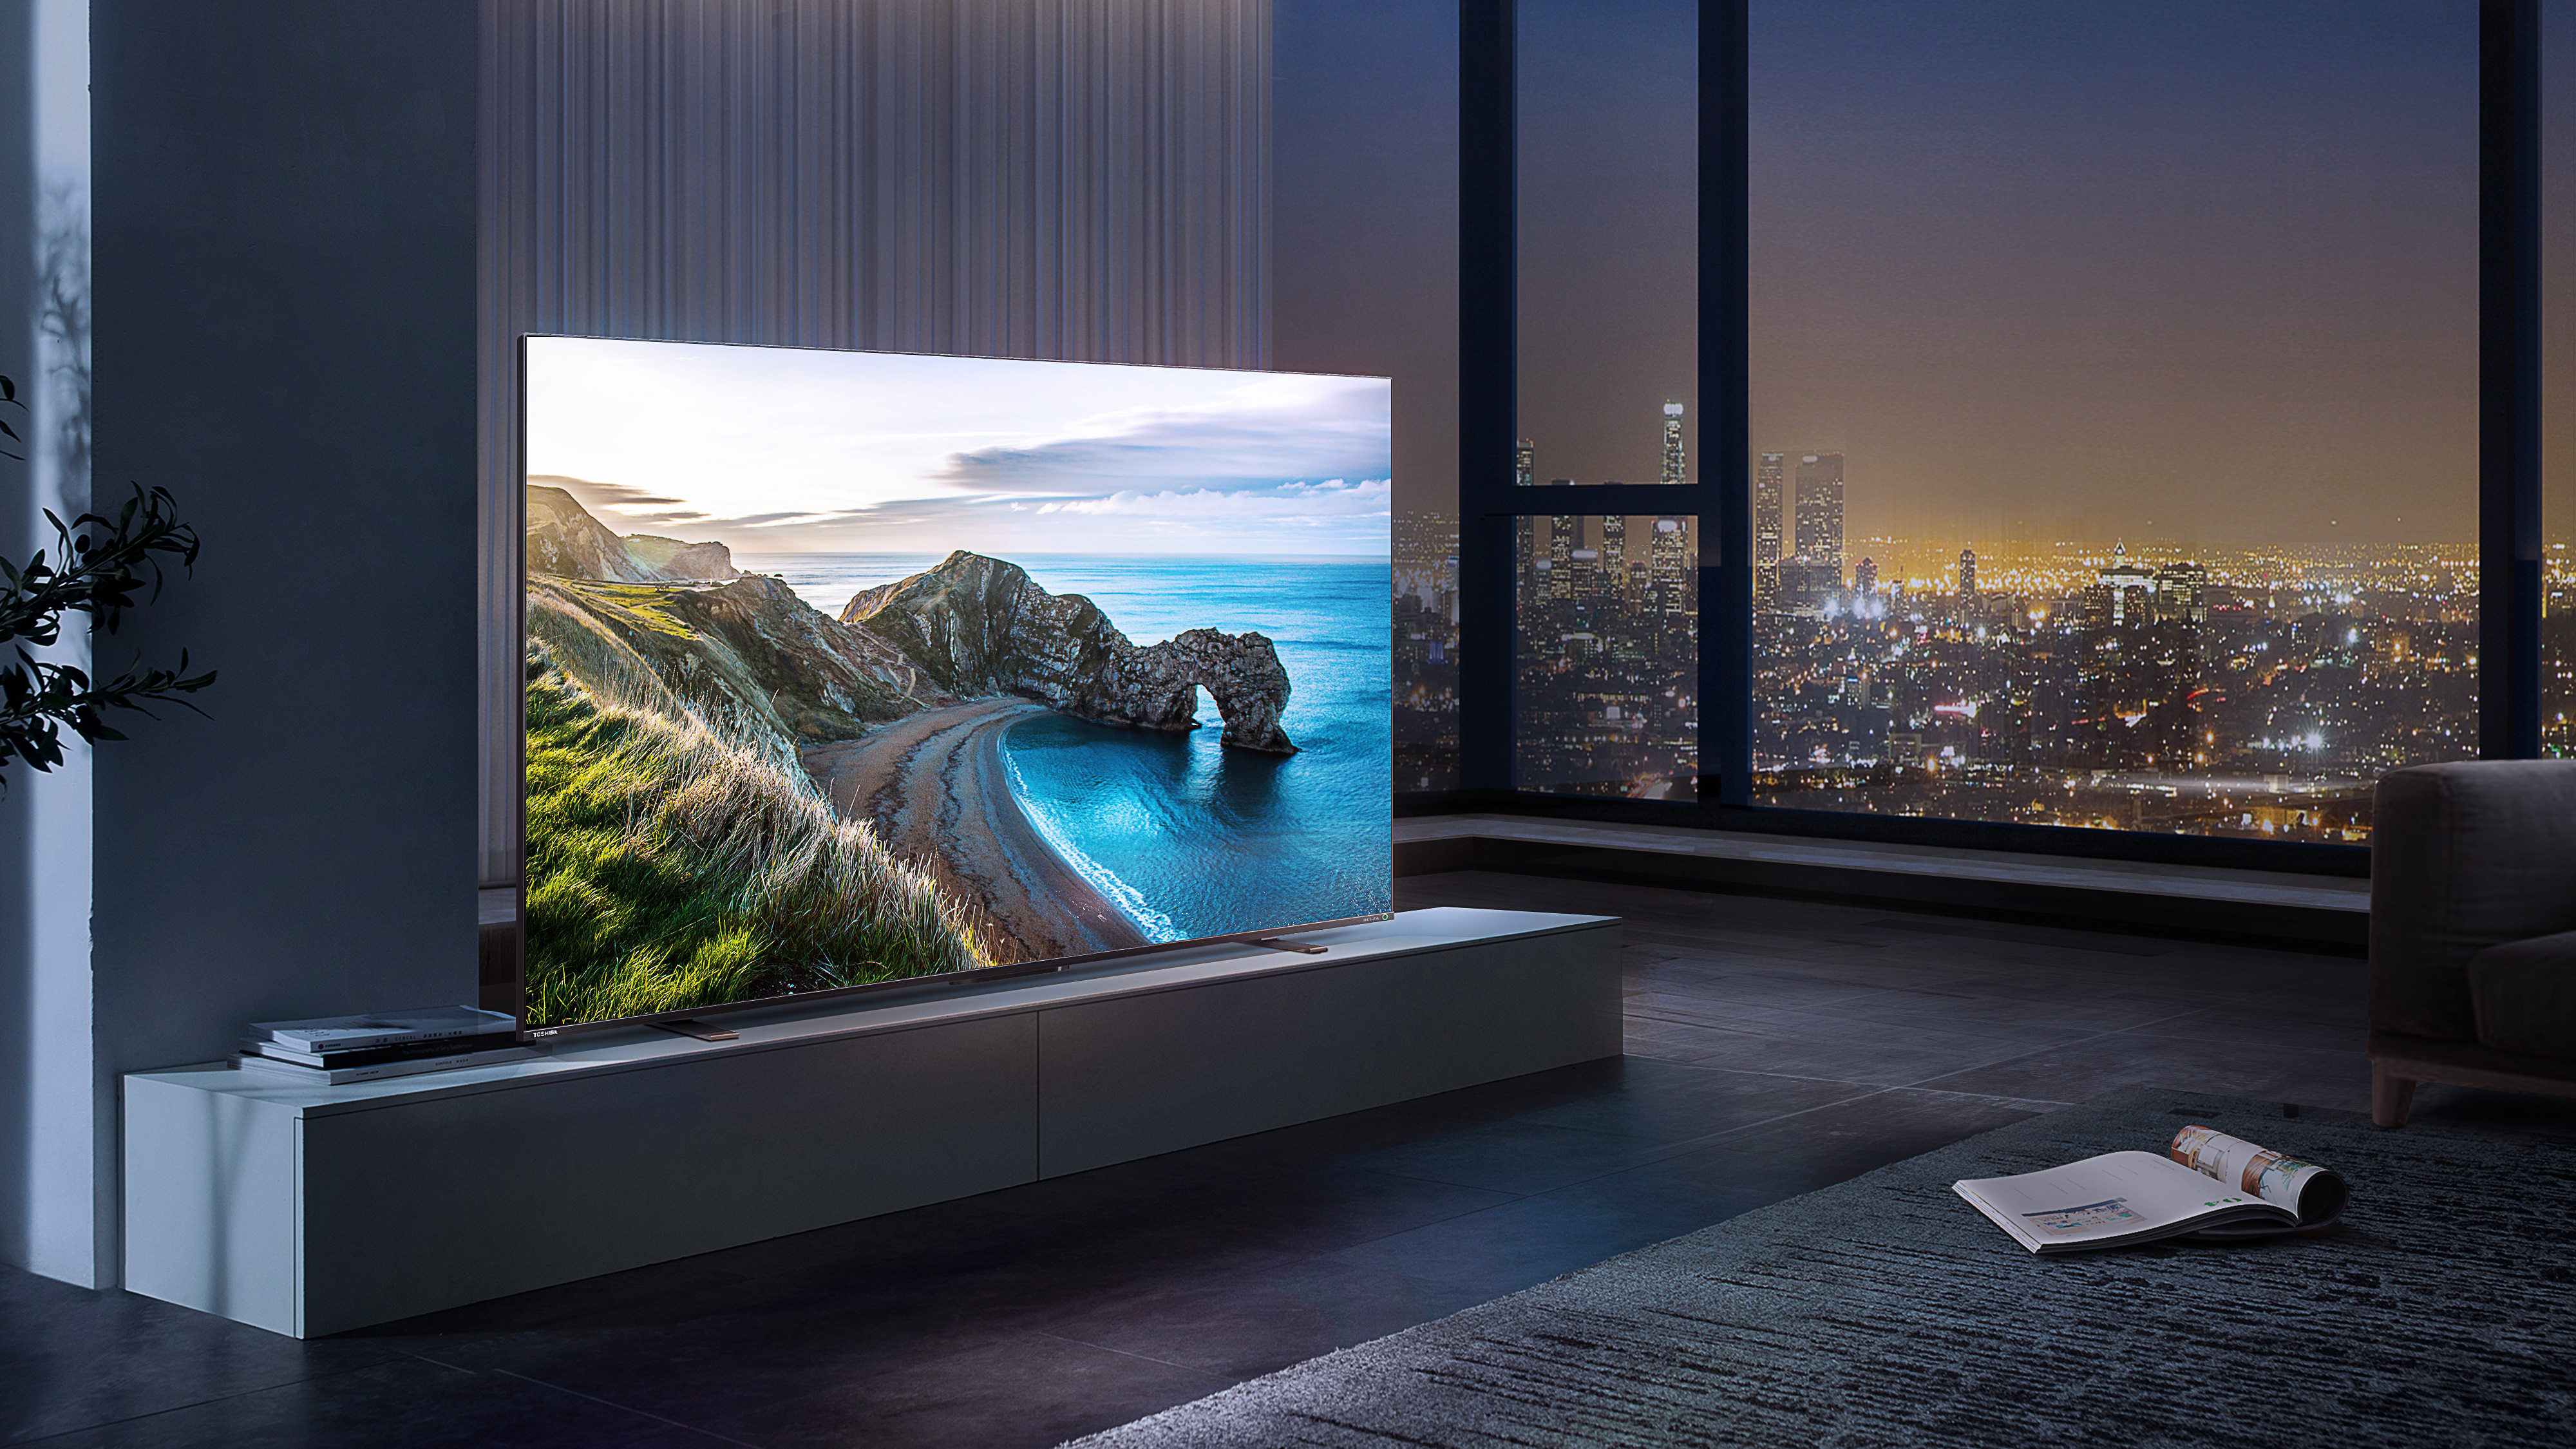 Телевизоры Toshiba сочетают в себе технологии и эстетику, обеспечивая исключительные впечатления от просмотра.